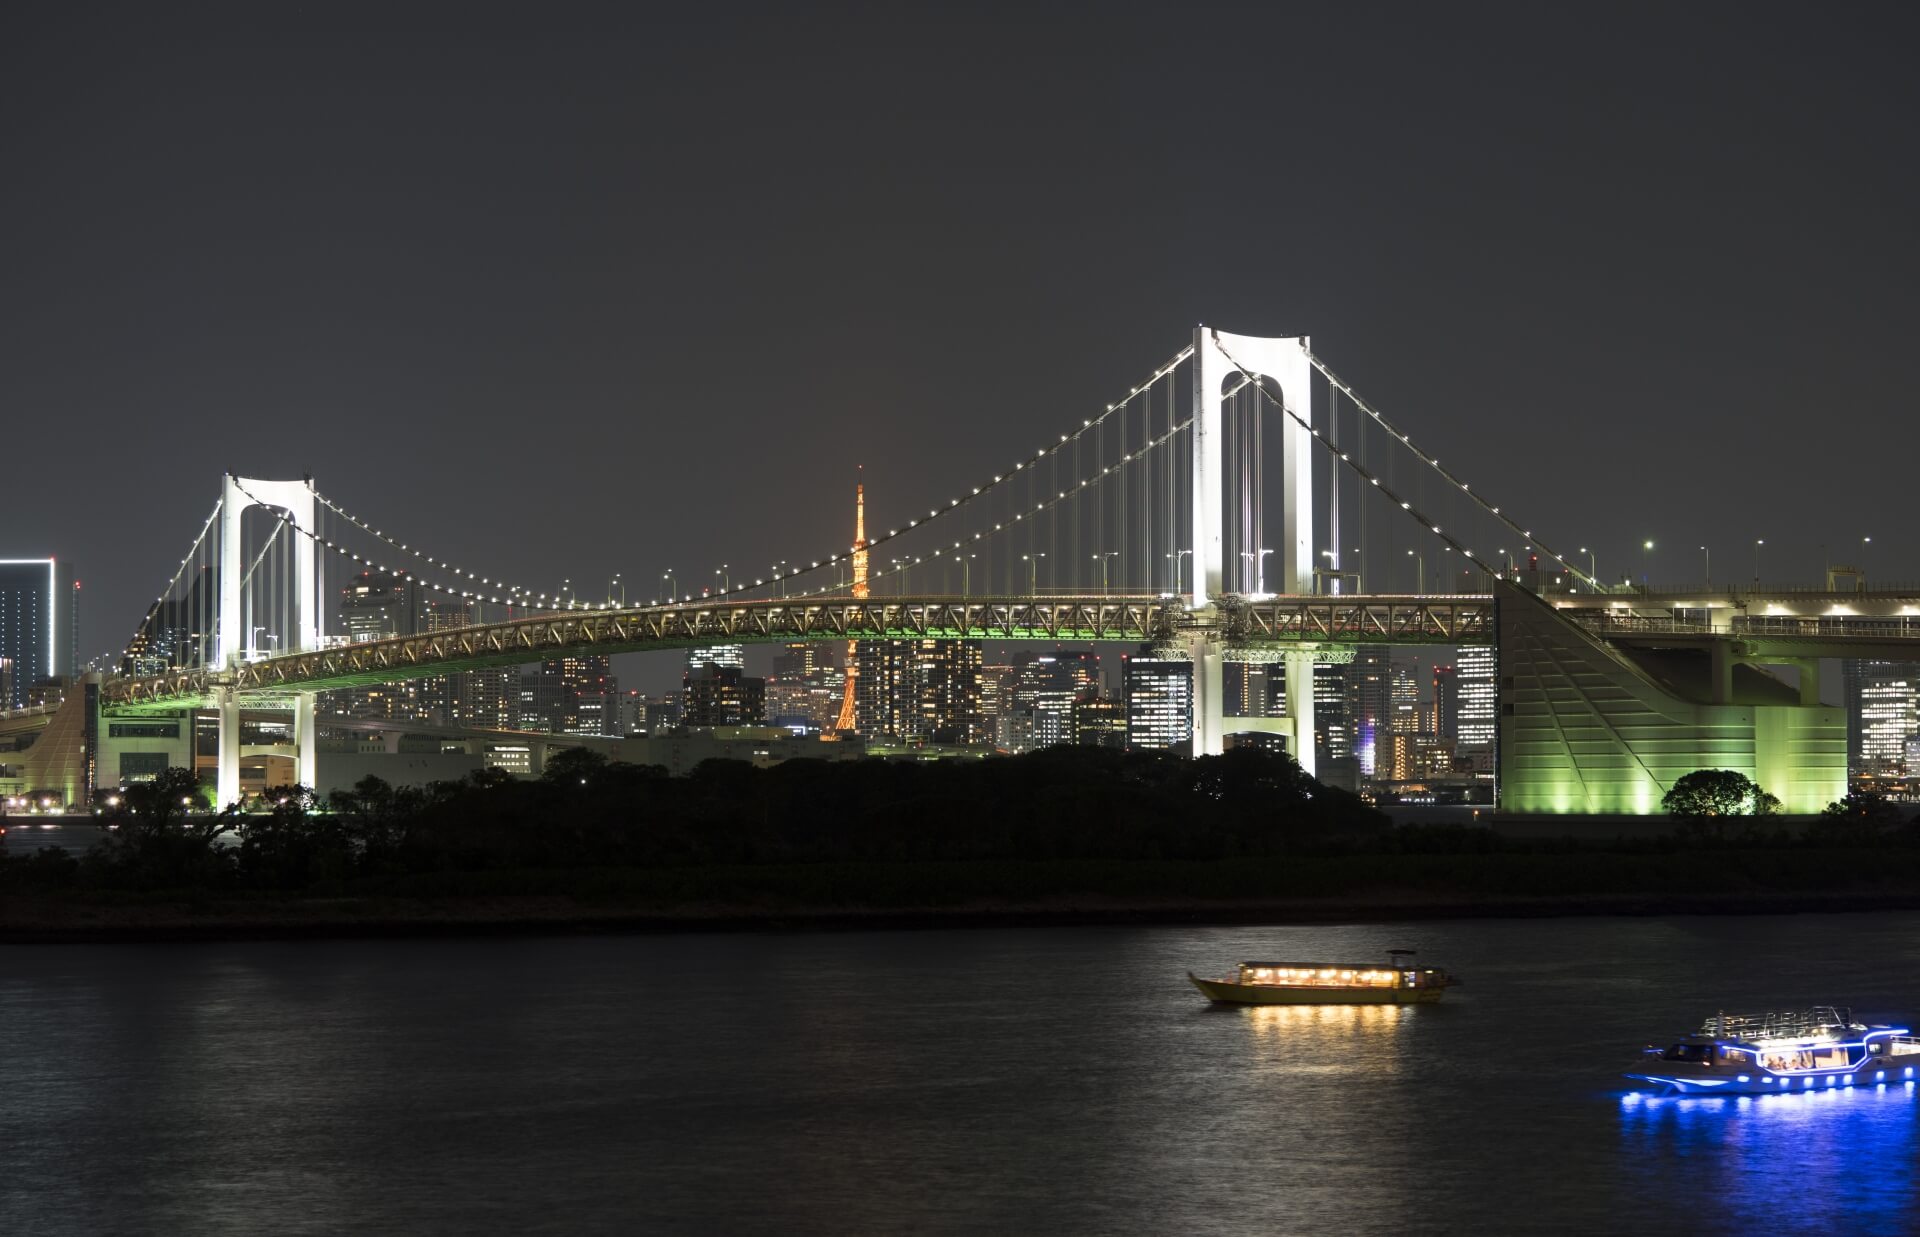 レインボーブリッジと東京タワーを一望できる夜景